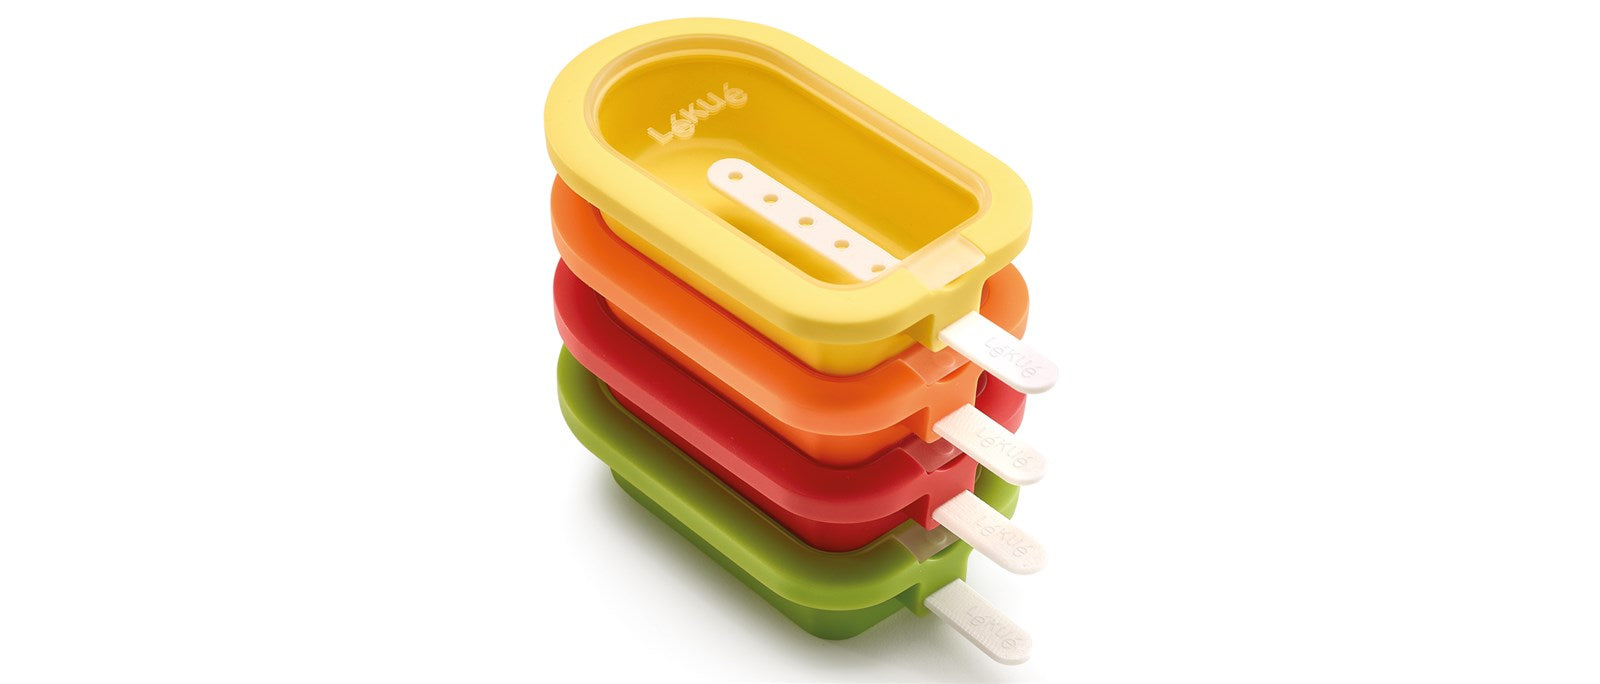 Eis am Stiel, Lolly, 4 Stk. gelb, grün, rot, orange in  präsentiert im Onlineshop von KAQTU Design AG. Gefrieren ist von Lékué